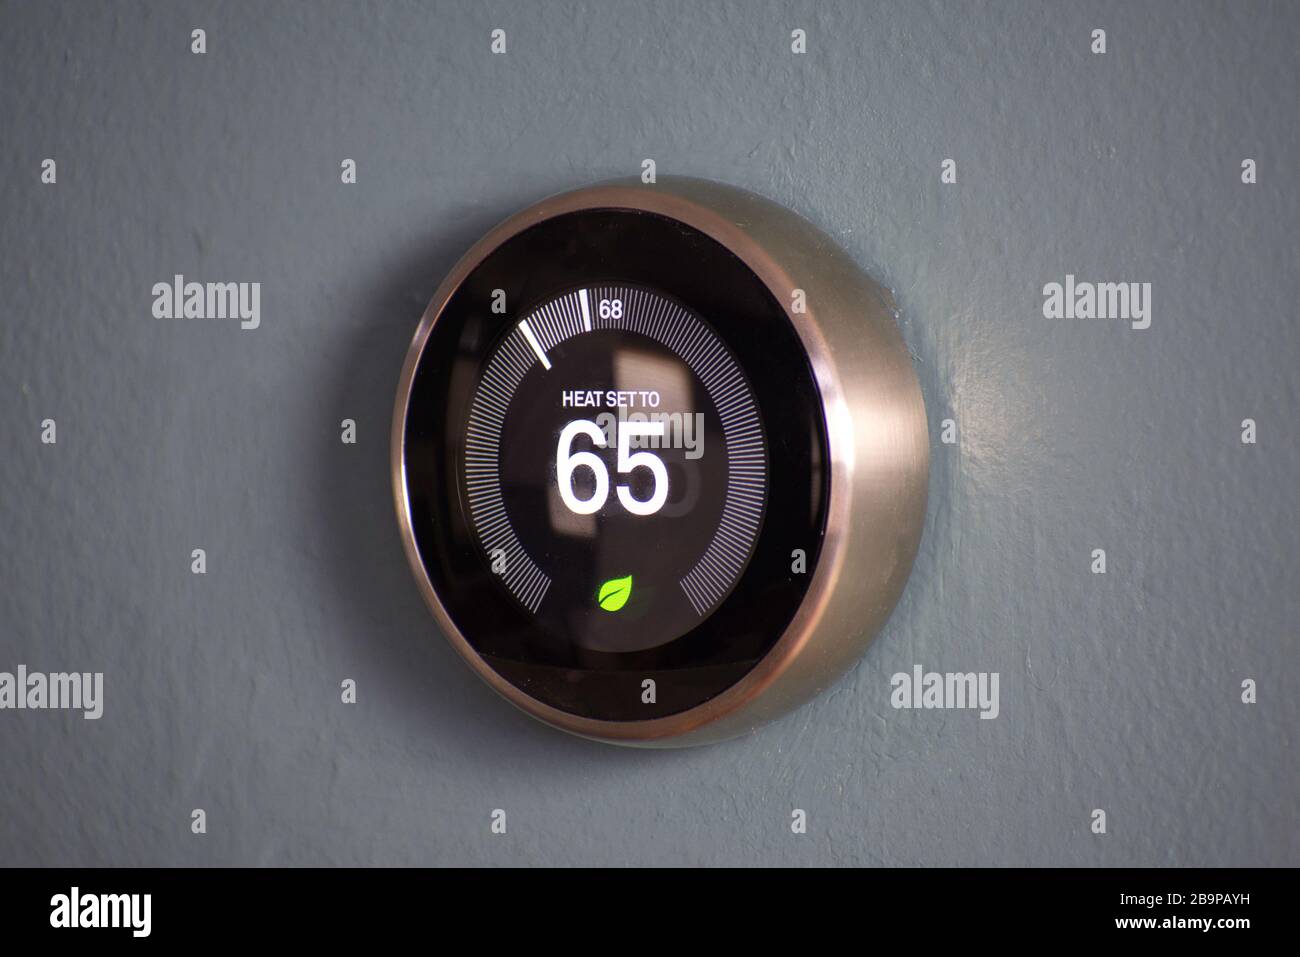 Thermostat domestique intelligent affichant la température à une économie d'énergie de 65 degrés. Température du nid Banque D'Images